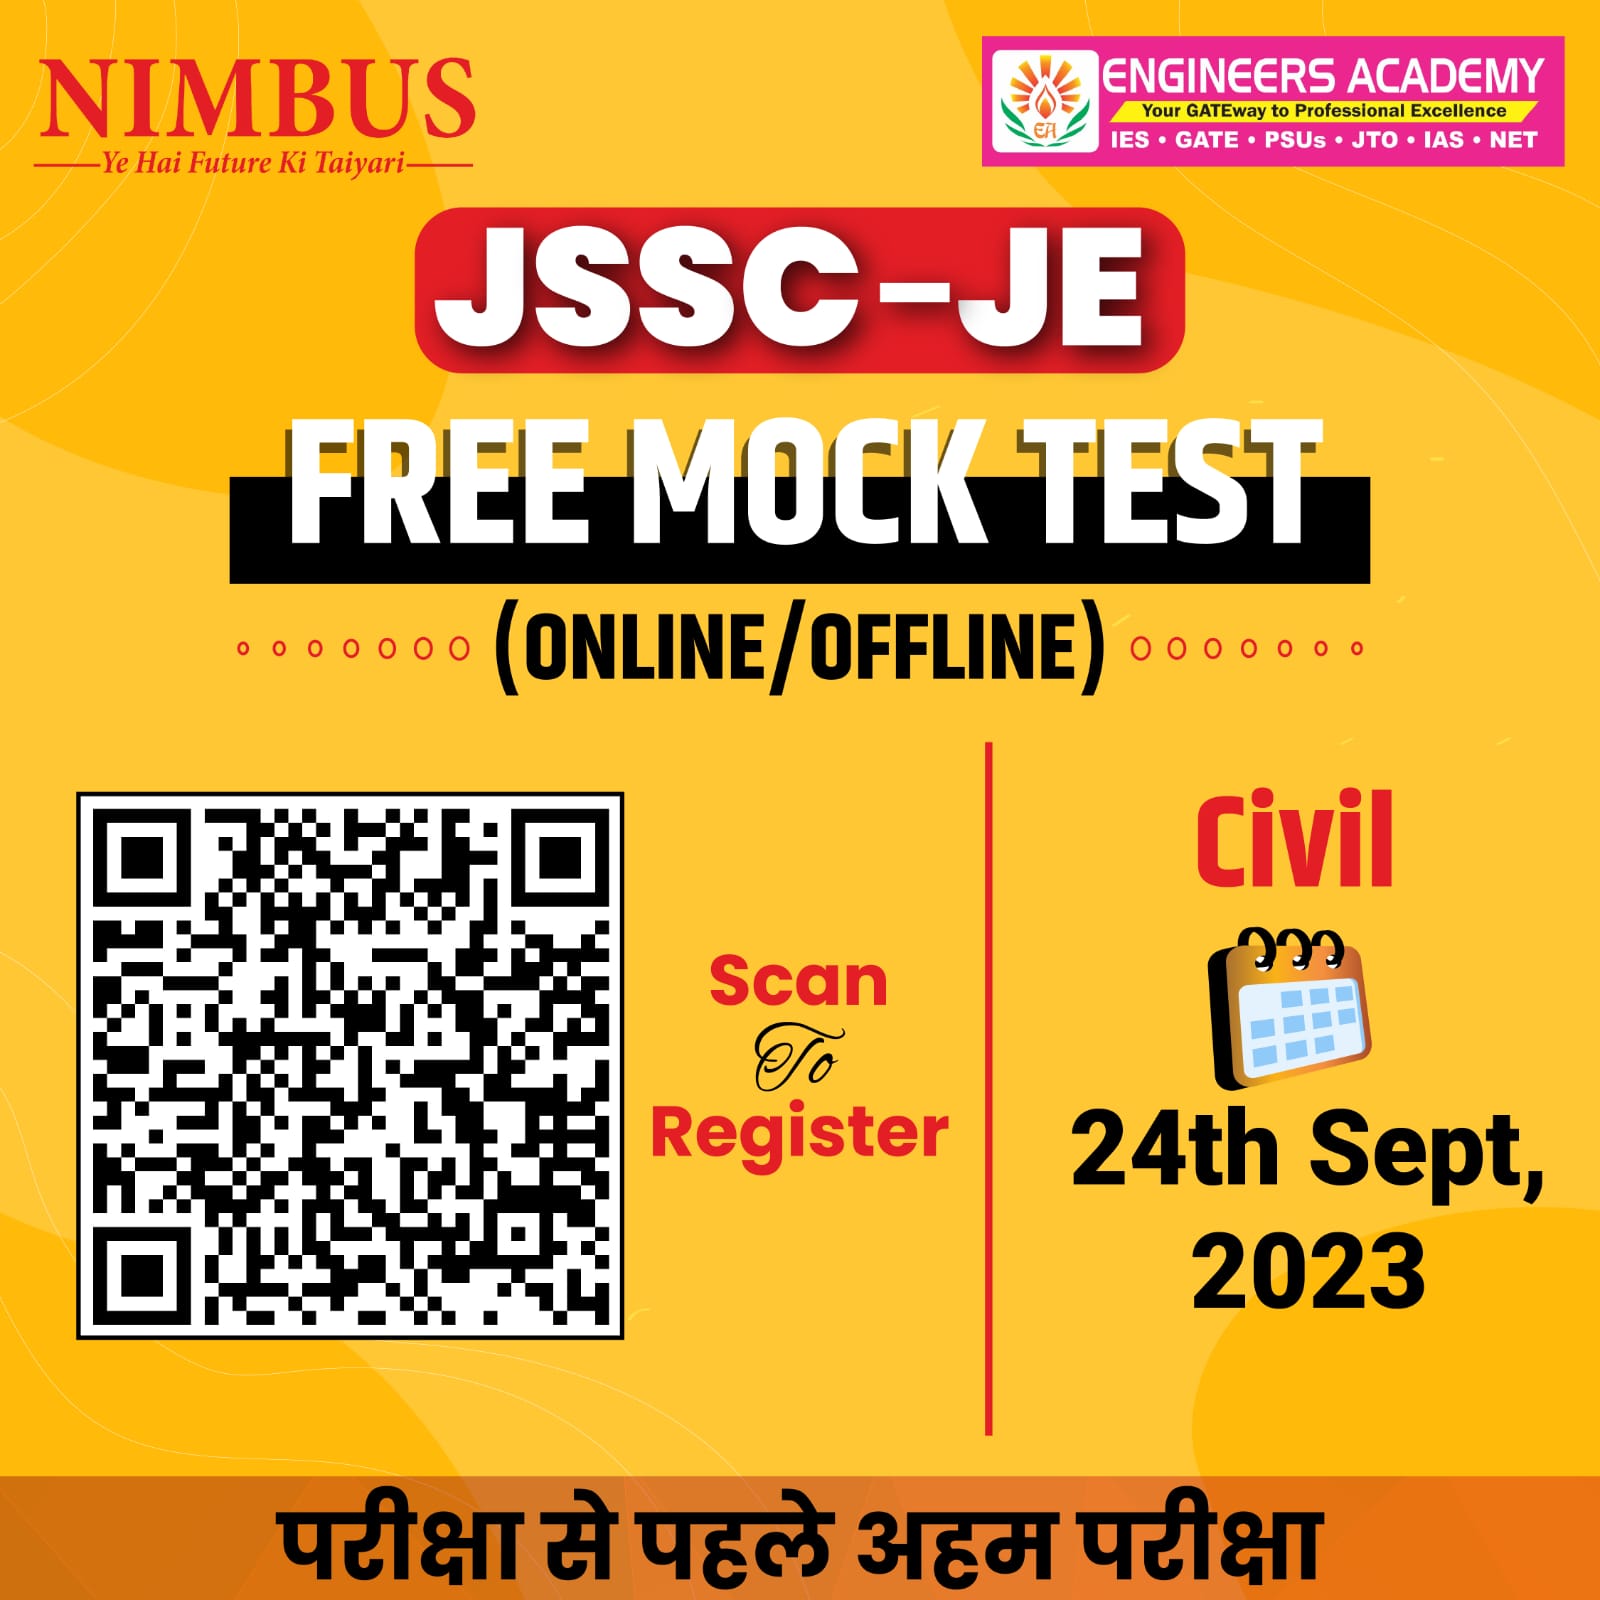 JSSC JE Free Mock Test Online Offline Civil EA